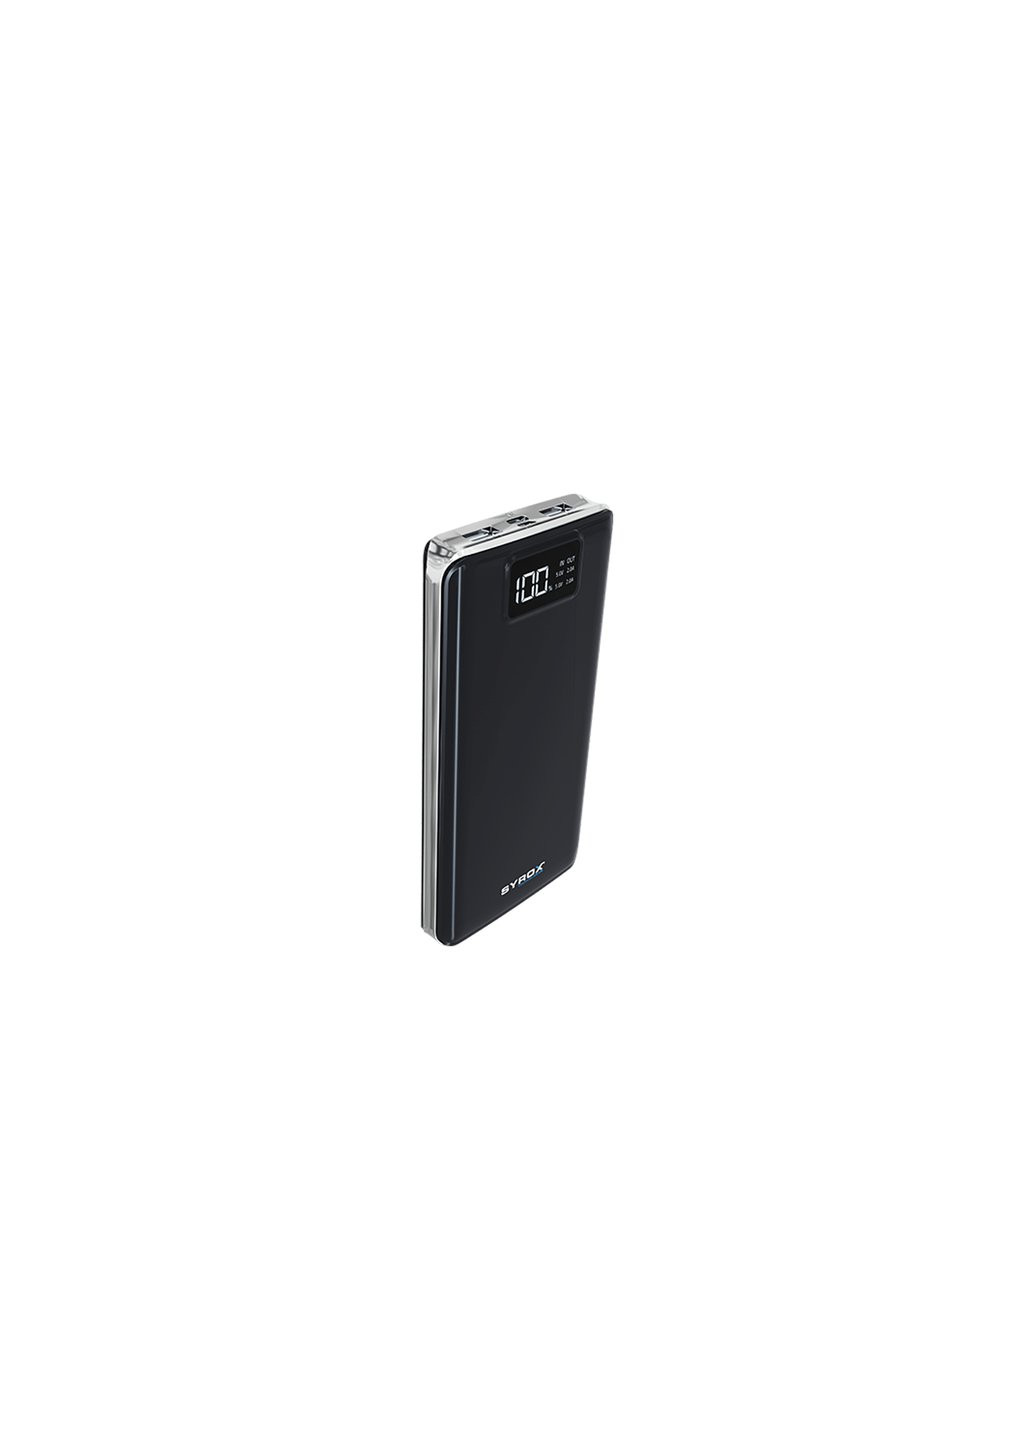 Батарея универсальная PB107 20000mAh, USB*2, Micro USB, Type C, black (PB107_black) Syrox